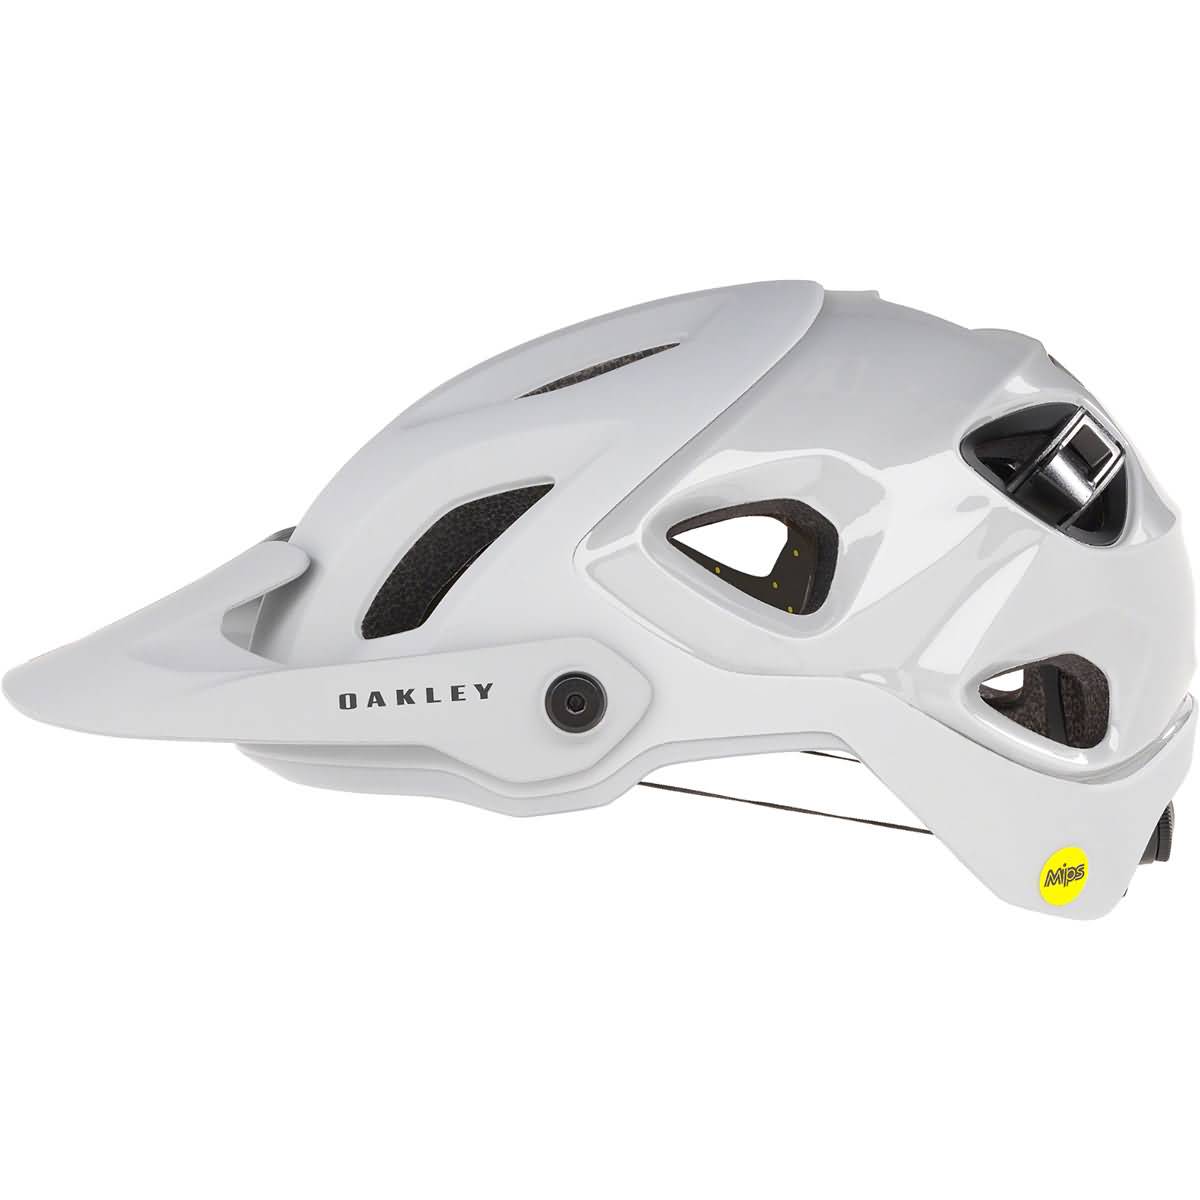 Oakley DRT5 Greg Minnaar Signature Series Adult MTB Helmet-99479